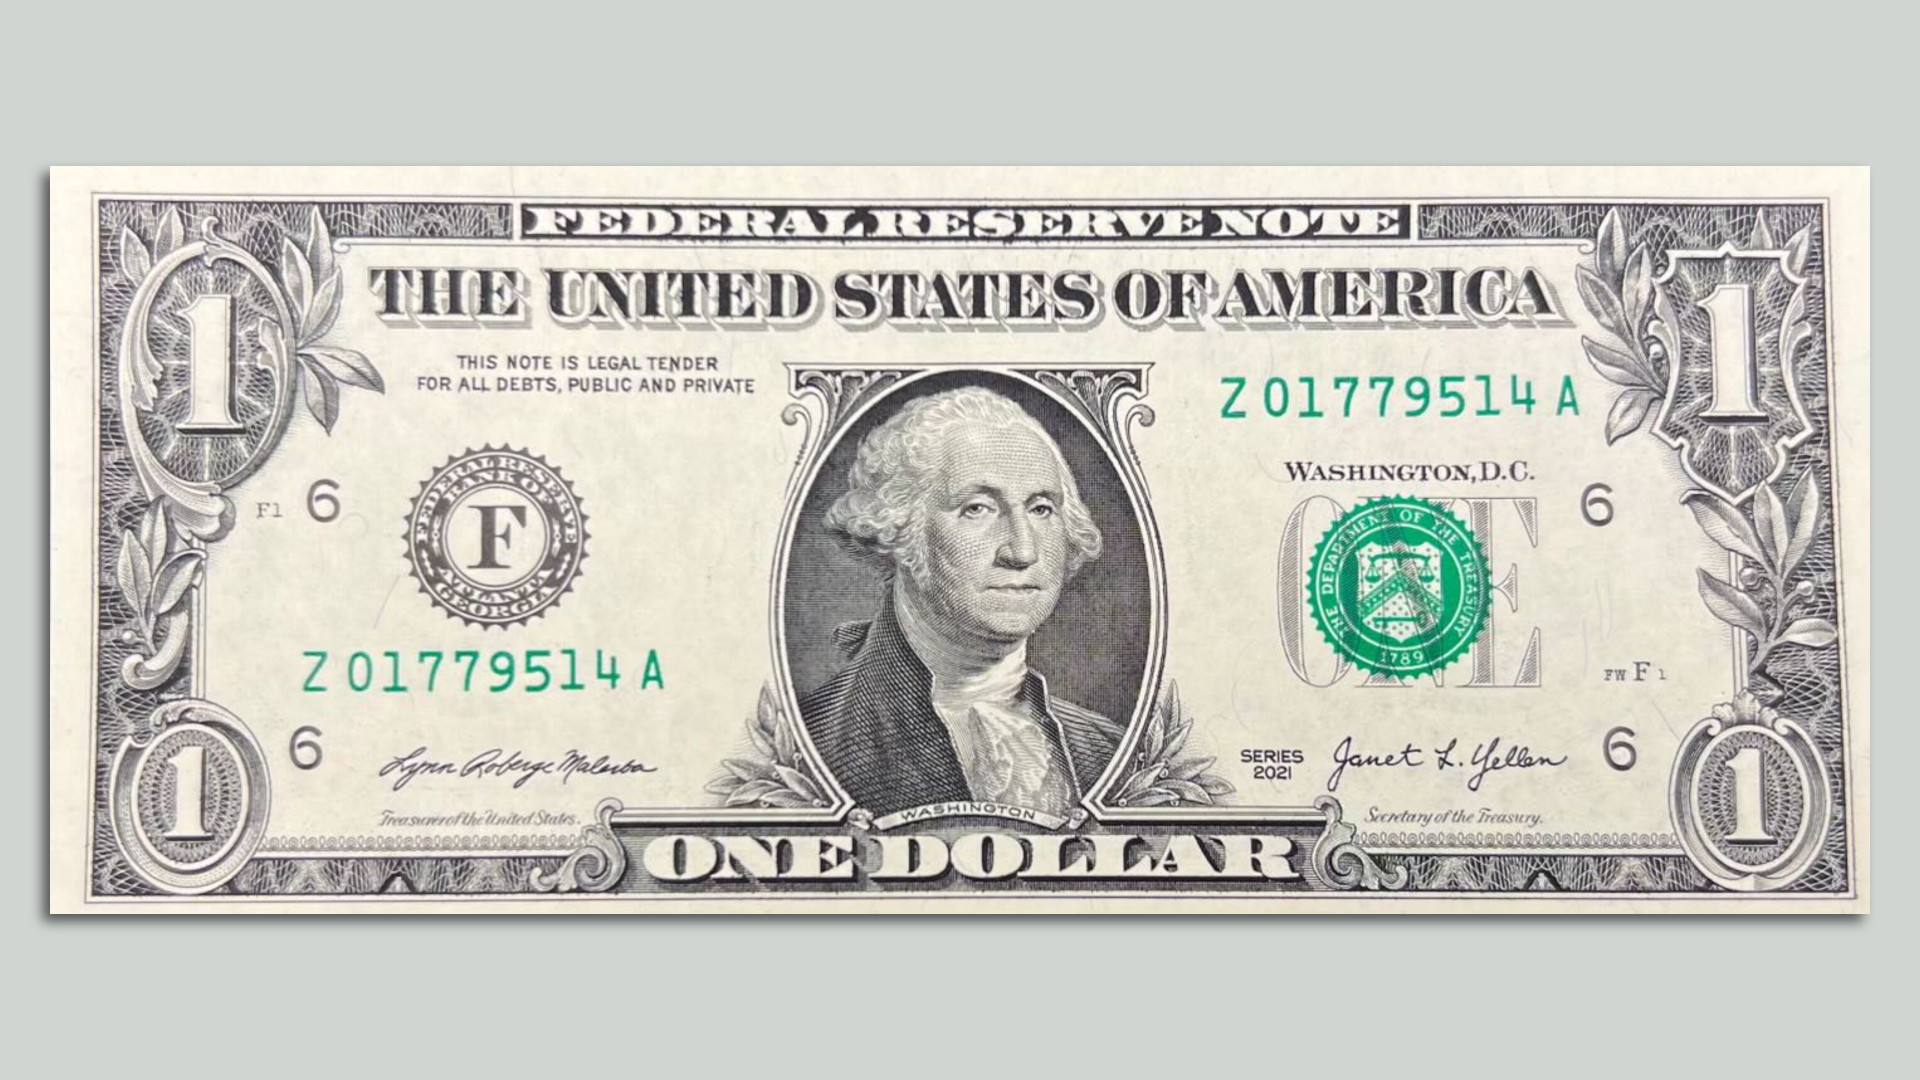 2022 1 dollar bill